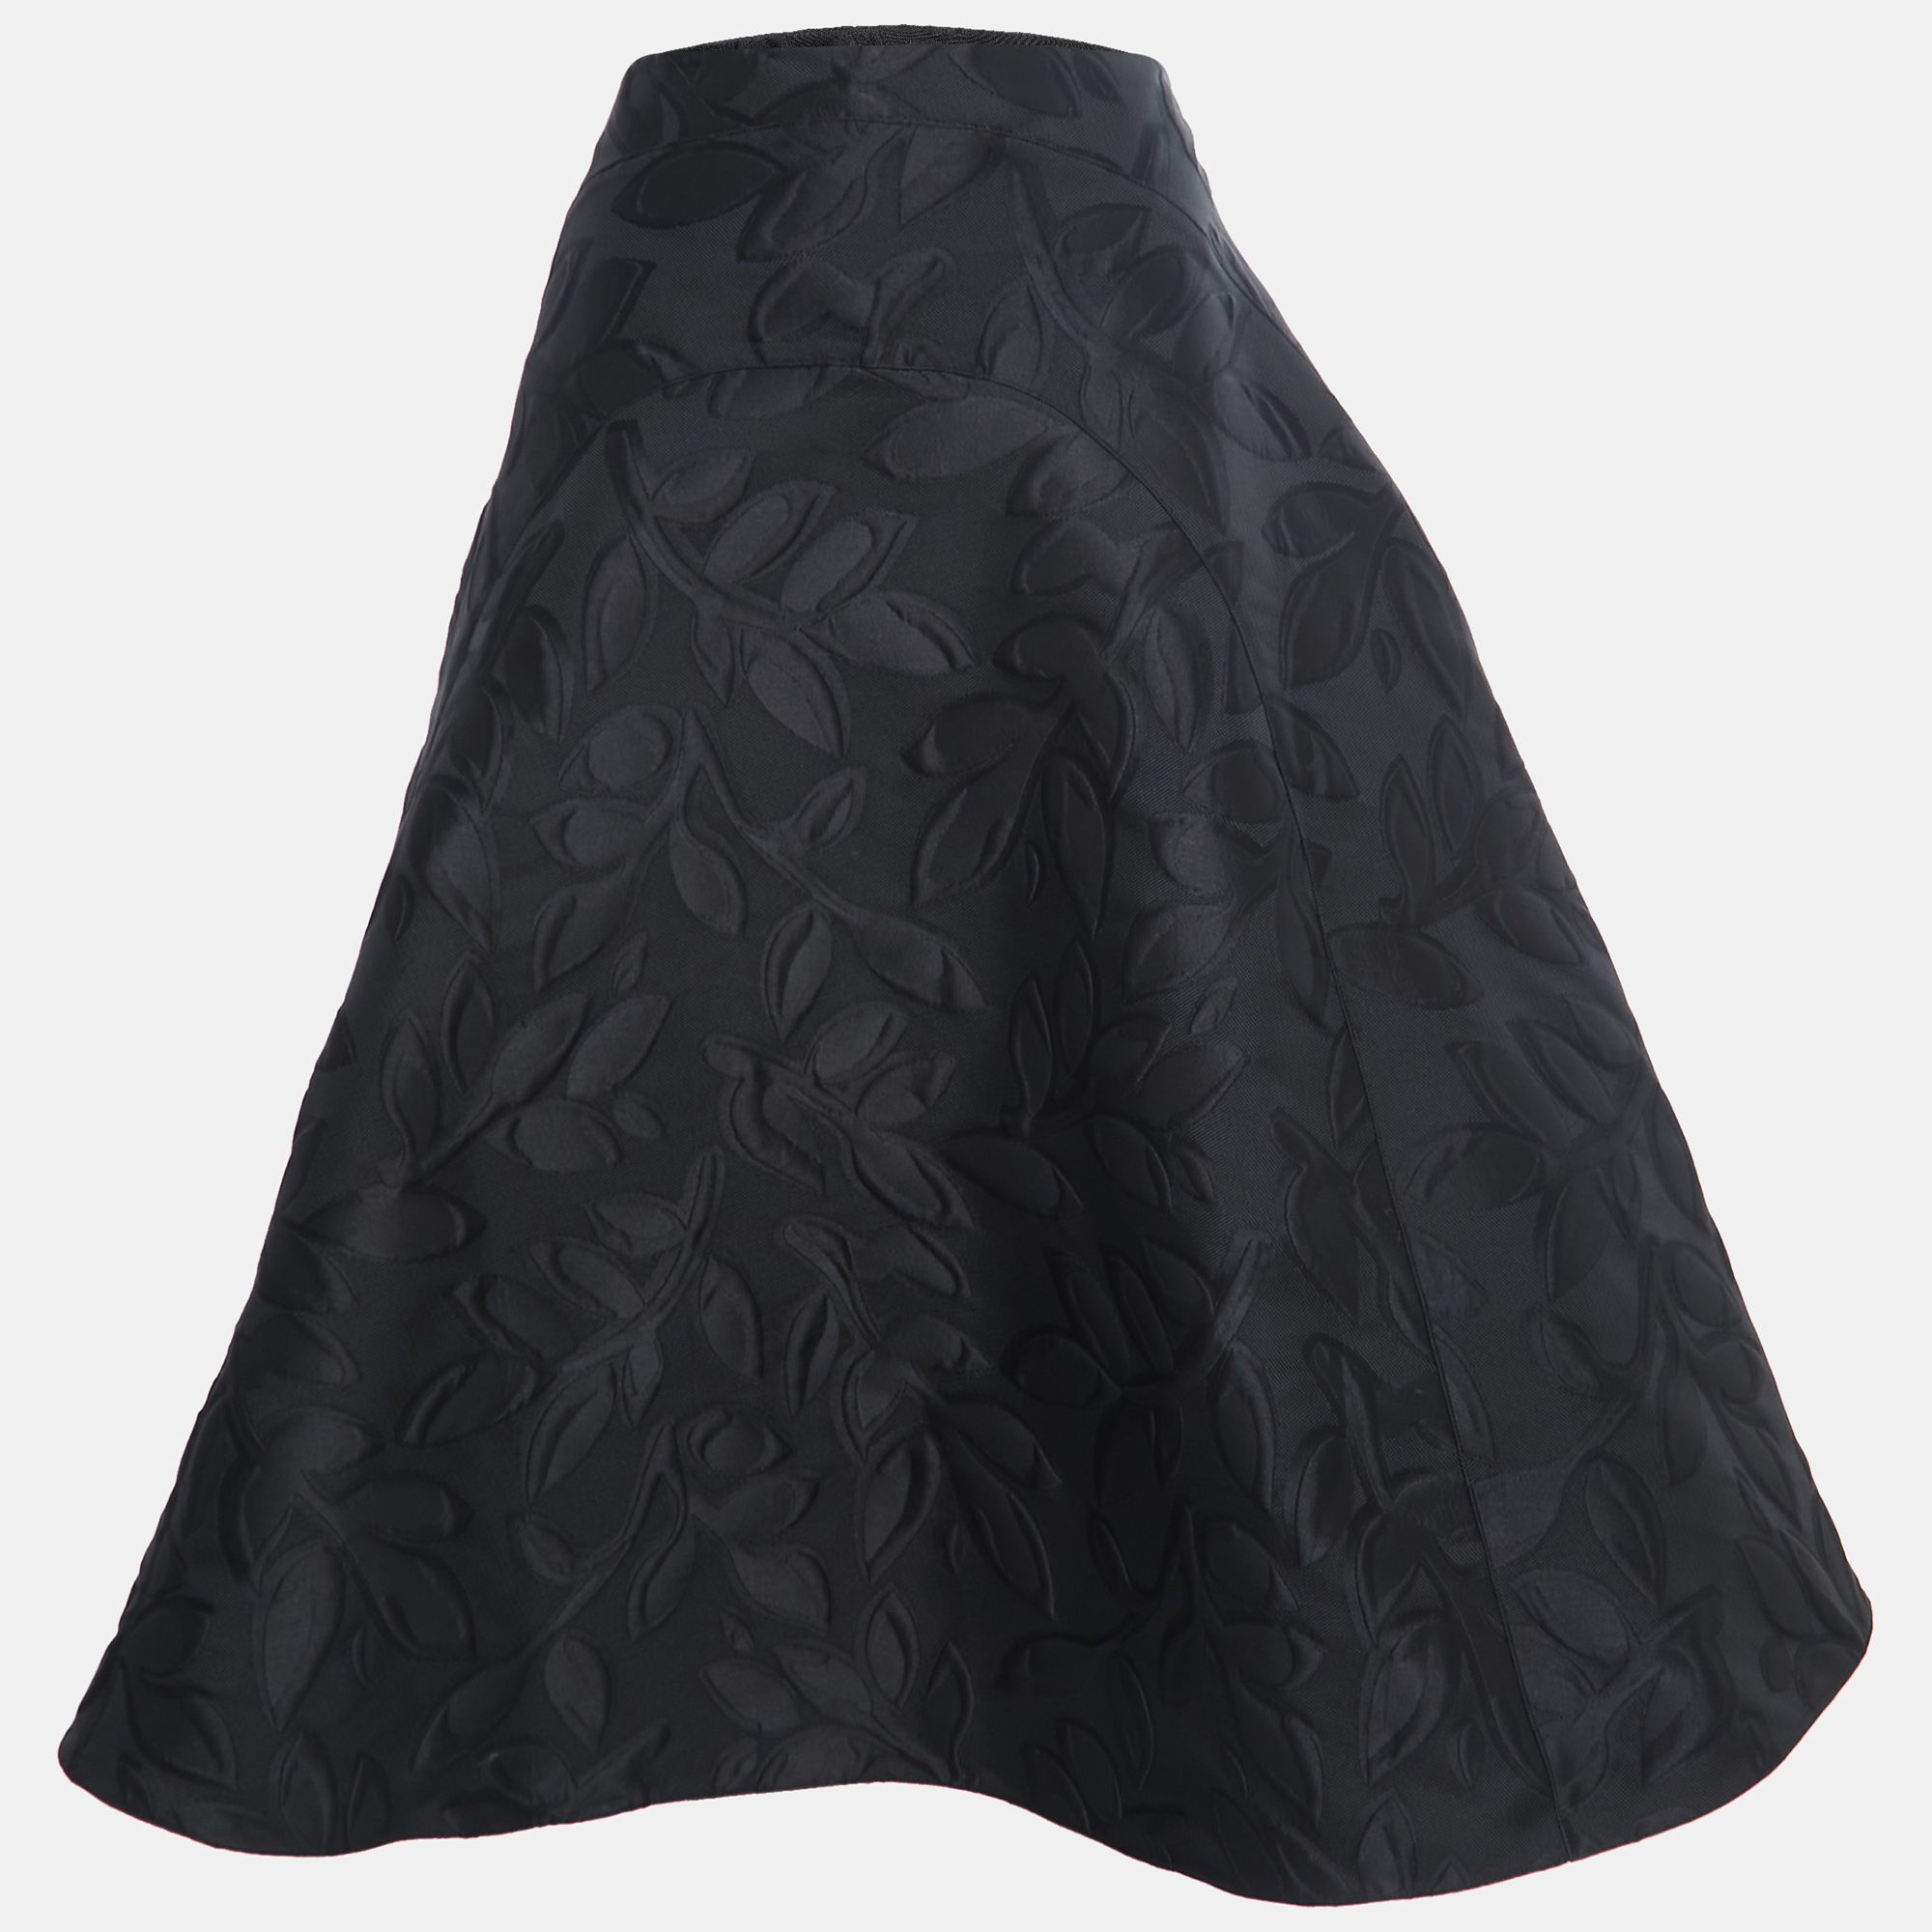 

Marni Black Floral Jacquard Midi Skirt